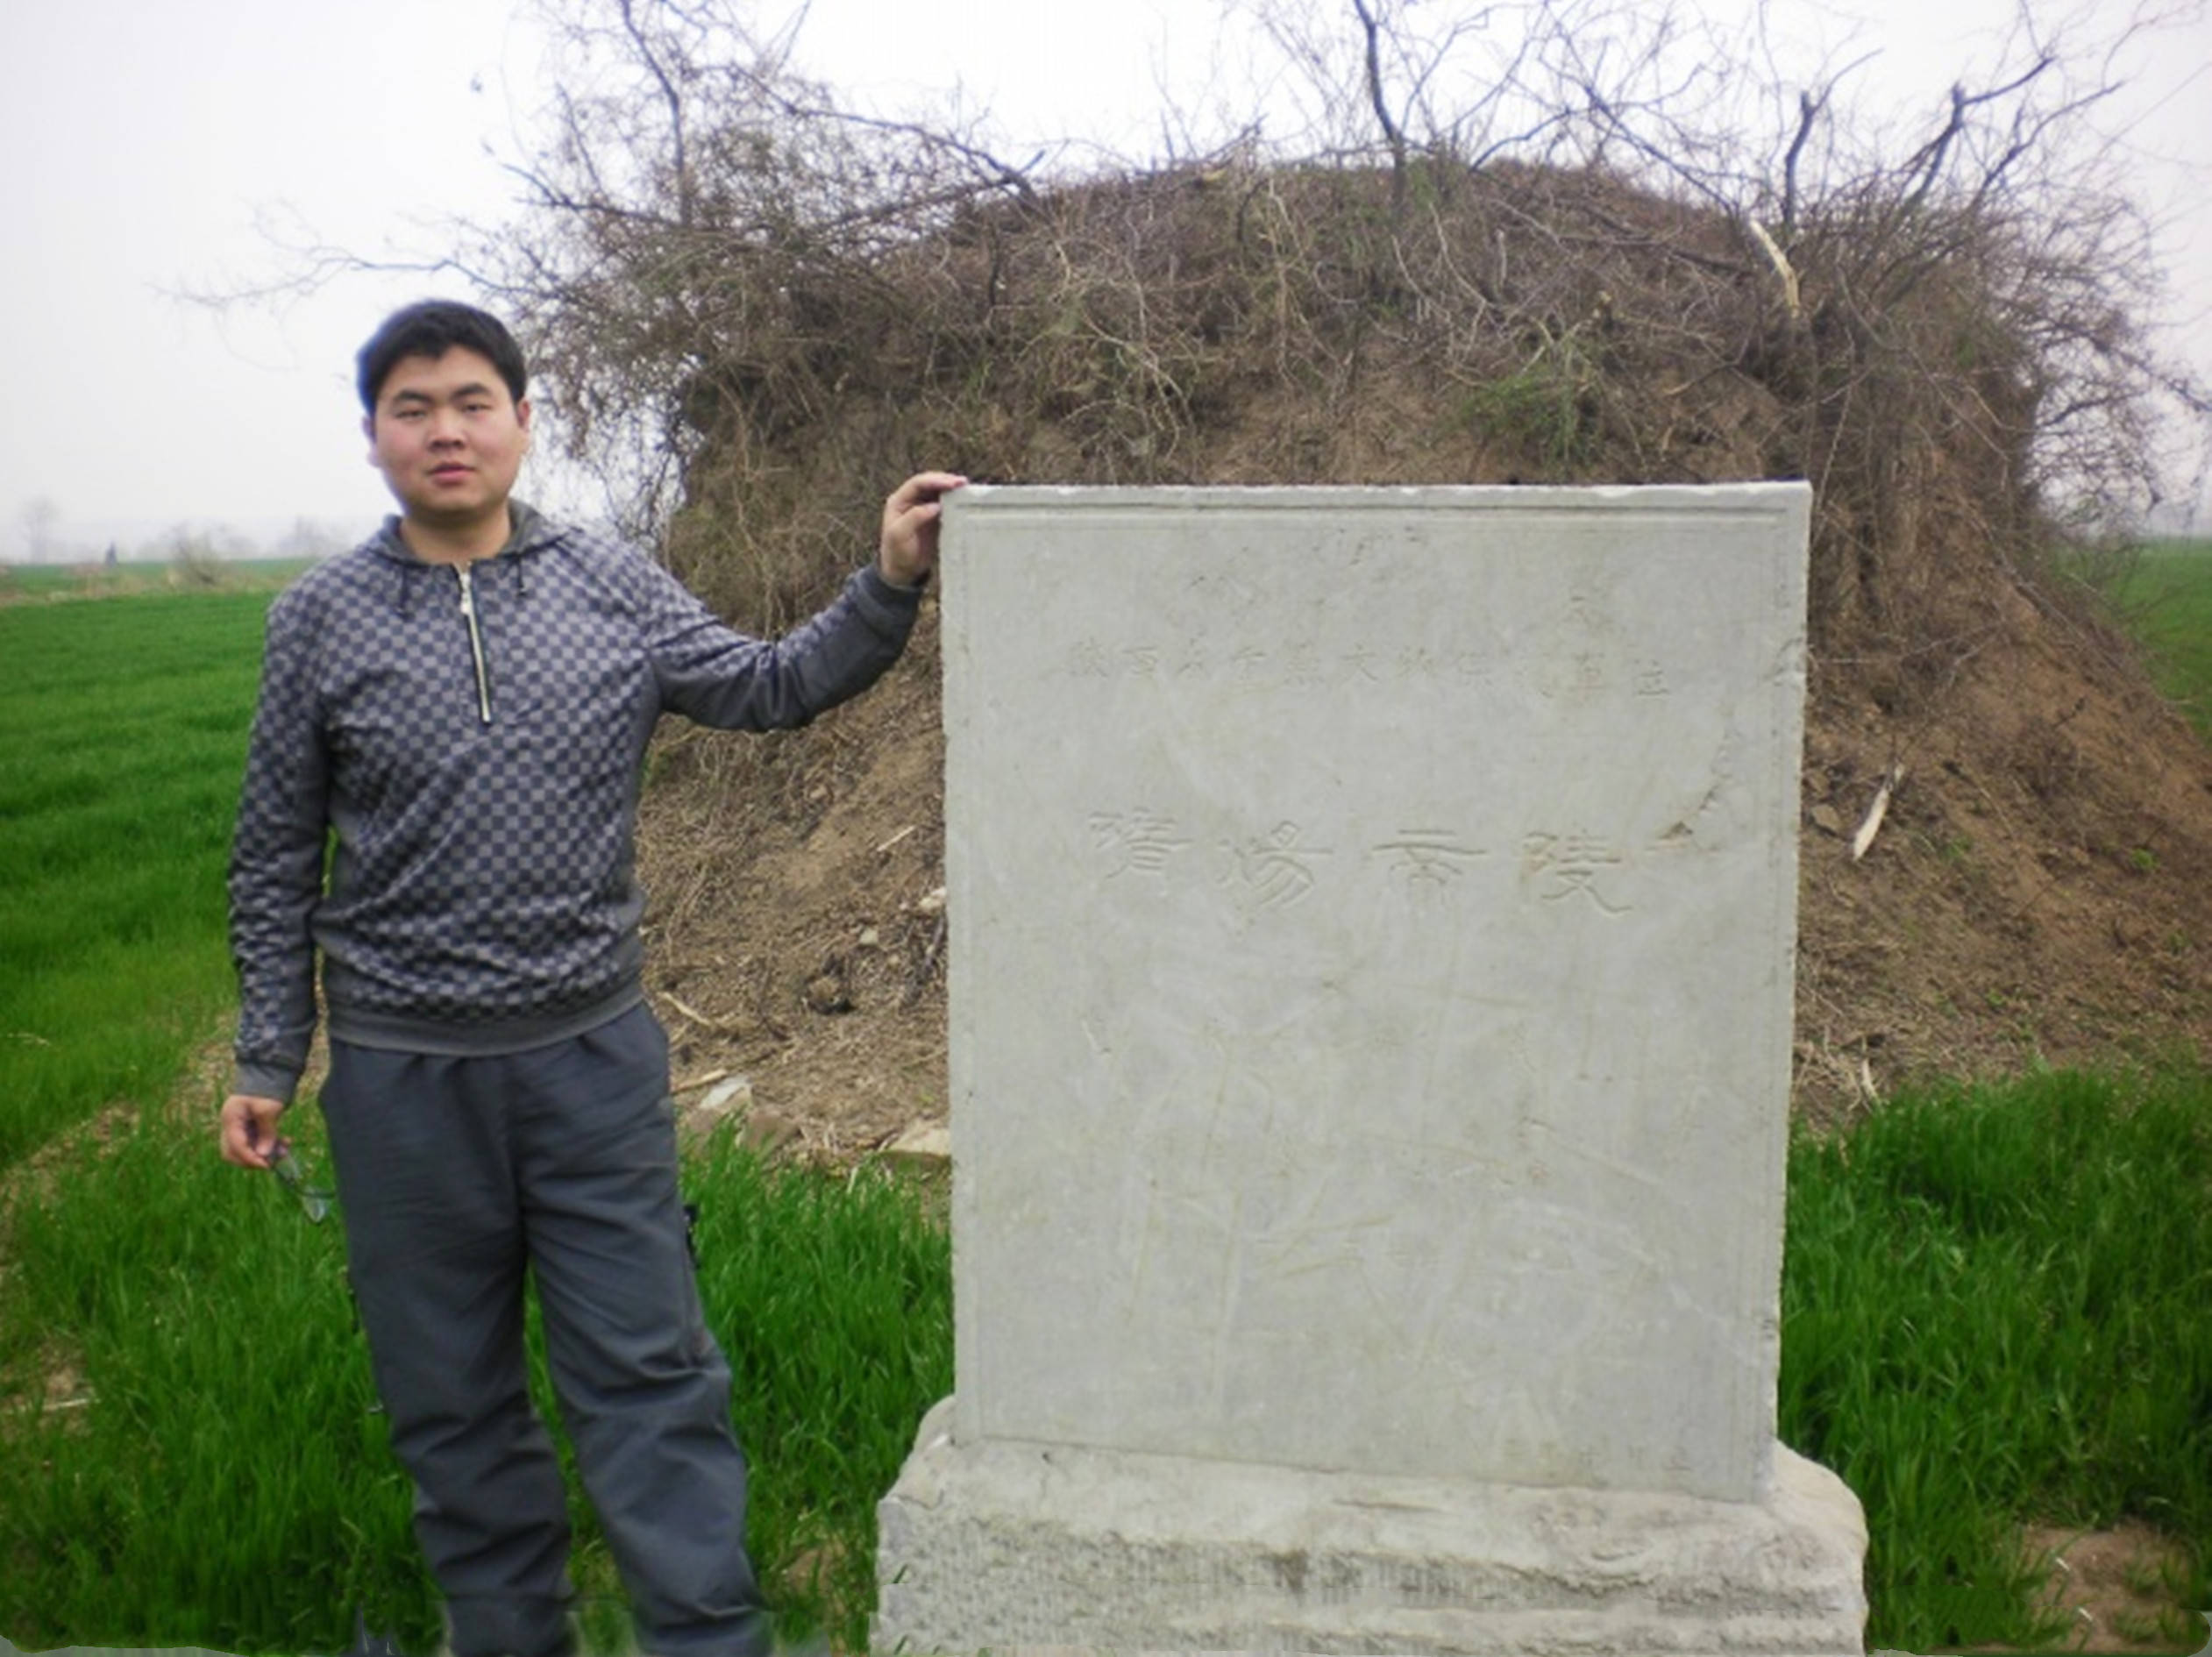 原创解读申威隆评选陕西十大帝王陵墓的过程和标准